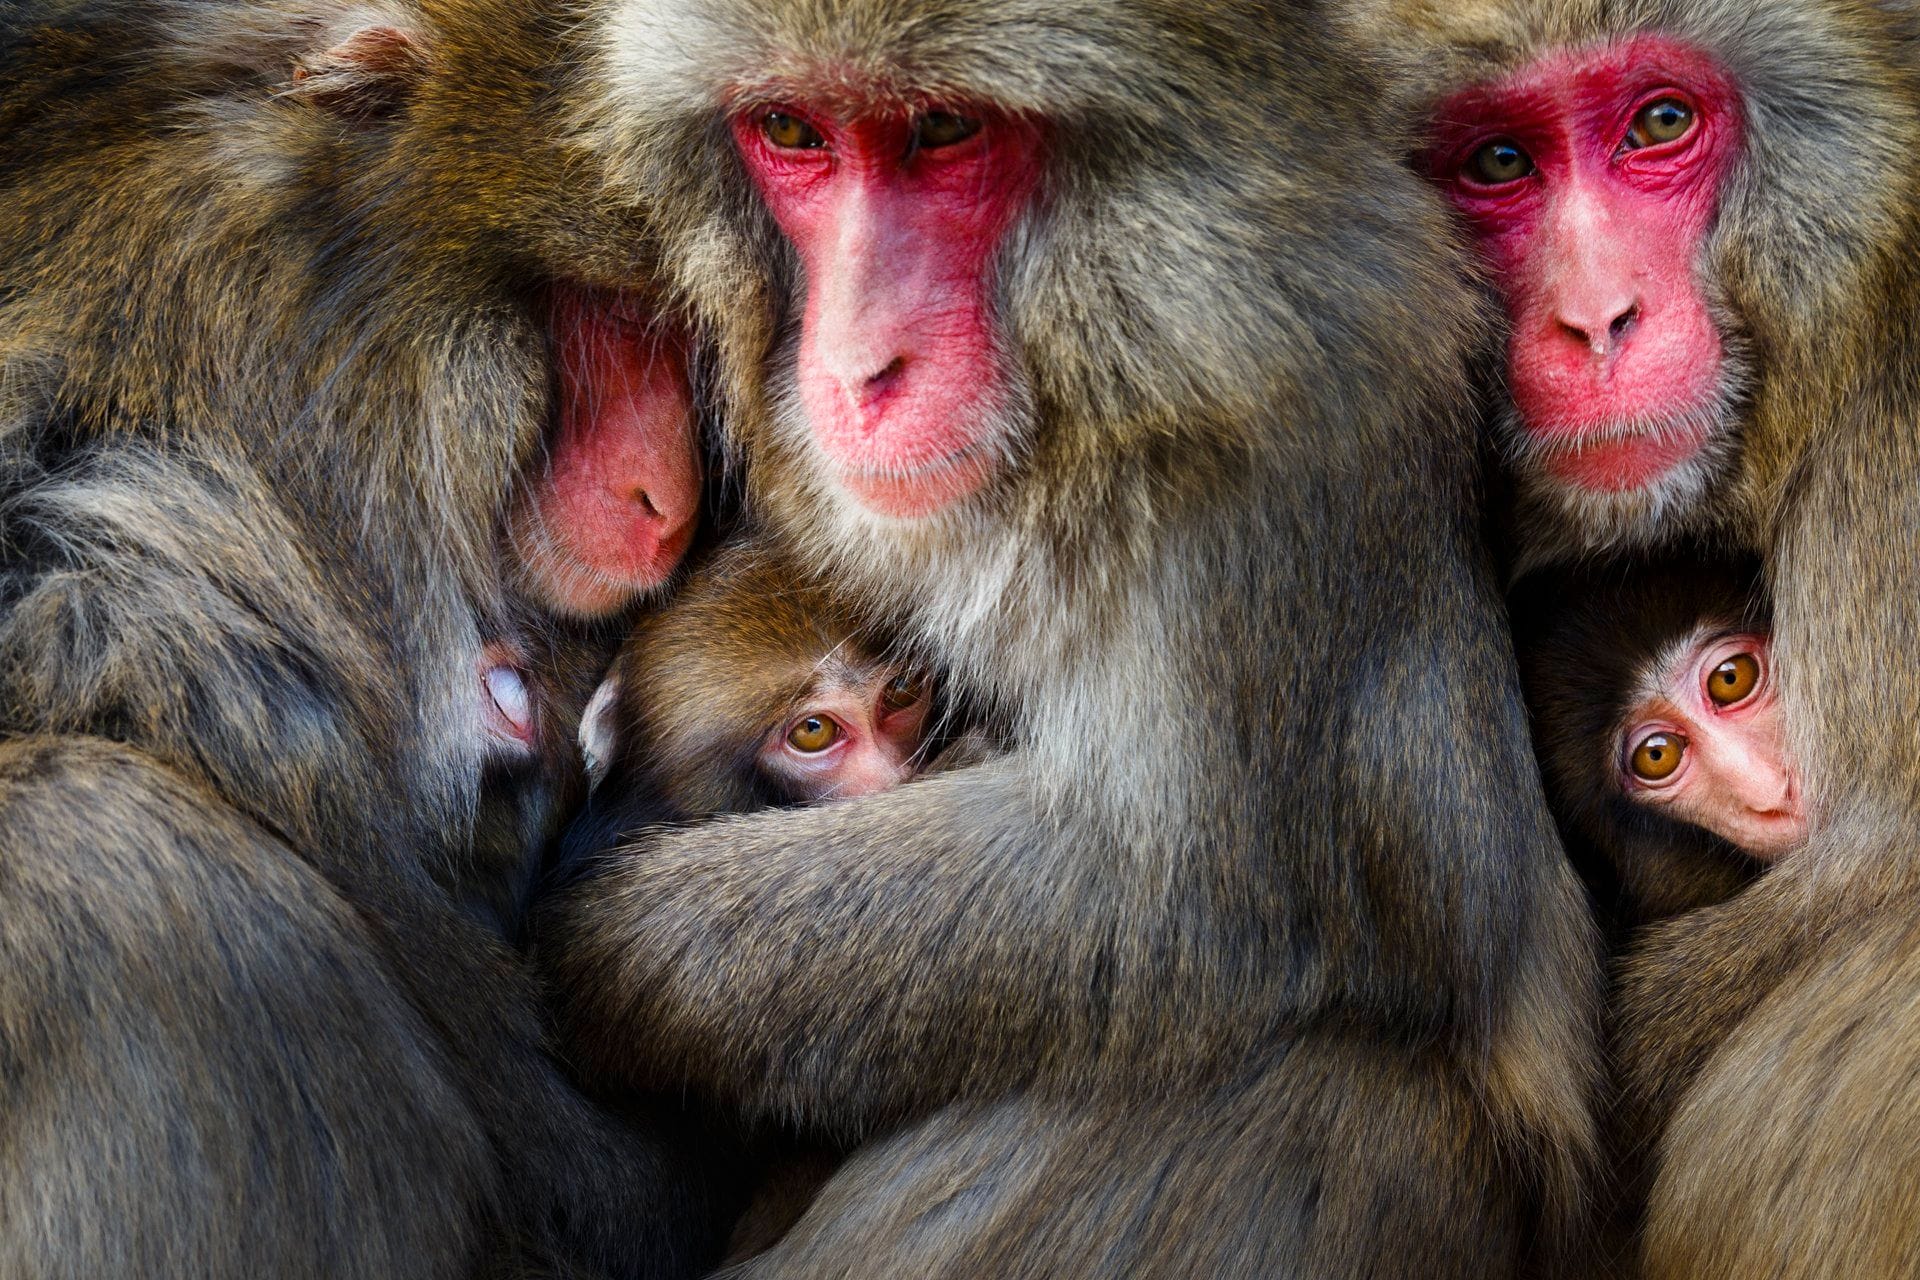 Japanische Makaken: Mit dem Bild gewann der Japaner Hidetoshi Ogata den ersten Platz in der Kategorie "Verhalten - Säugetiere".